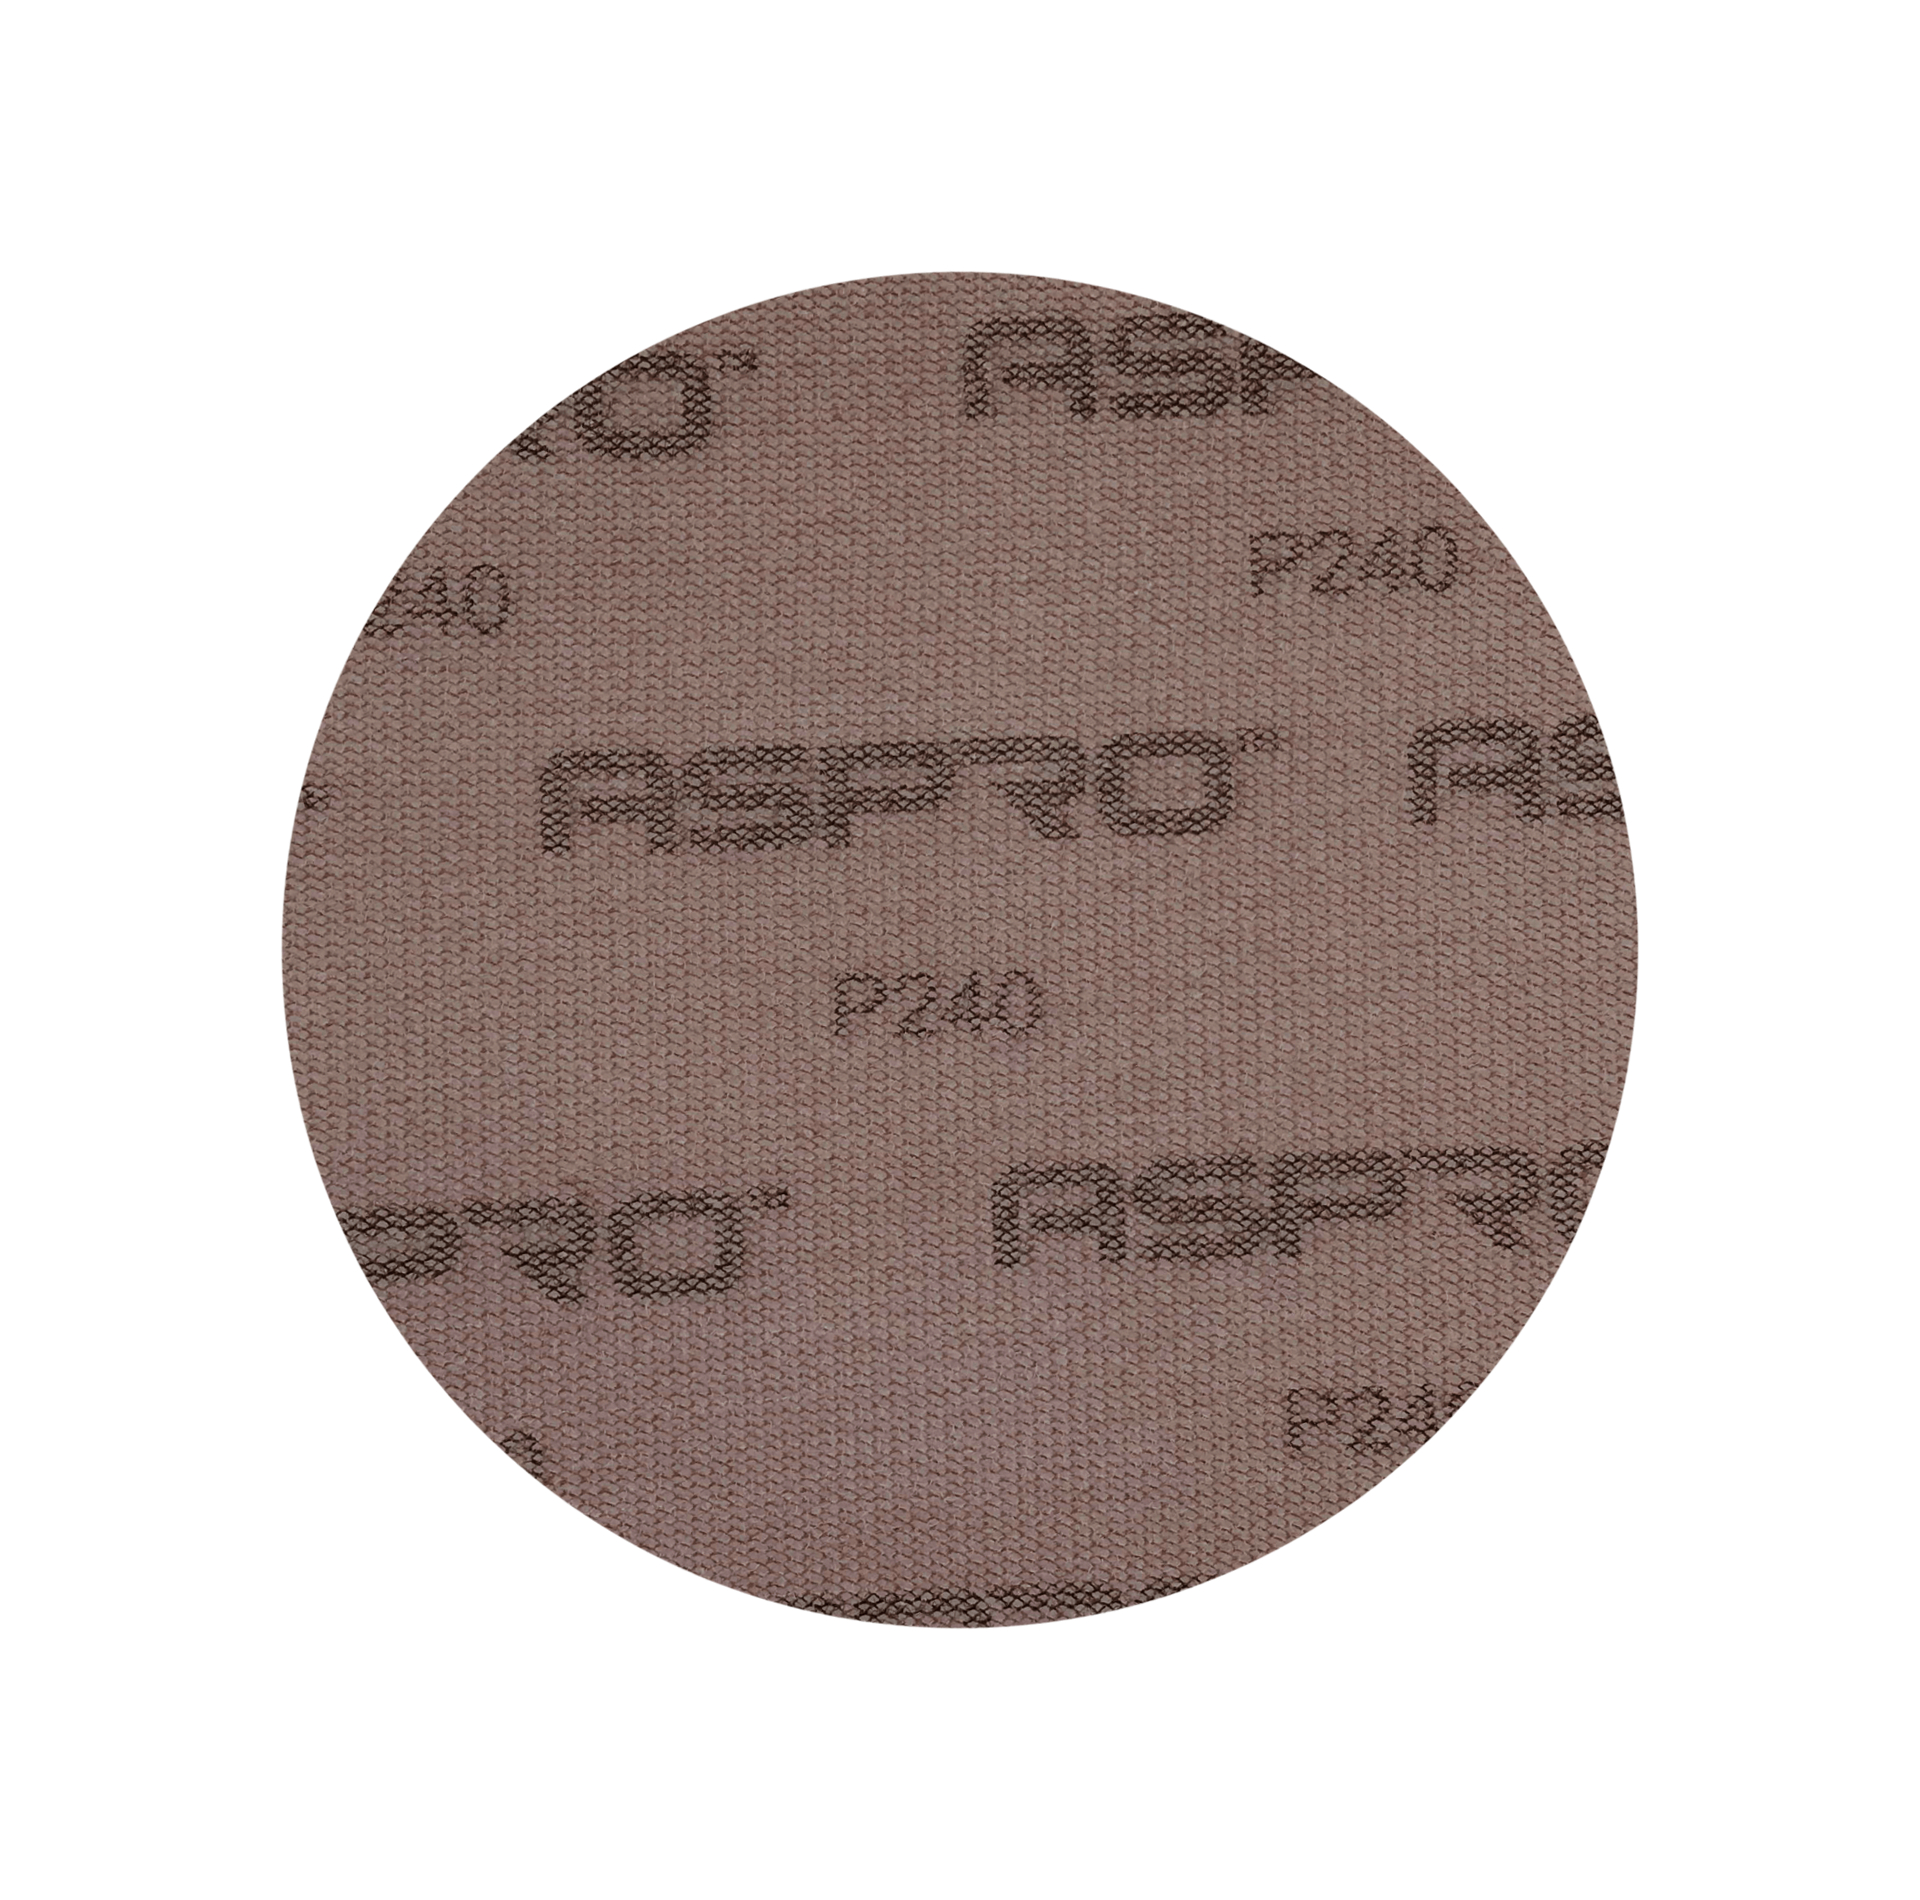 Бумага шлифовальная дисковая на сетке 150 мм